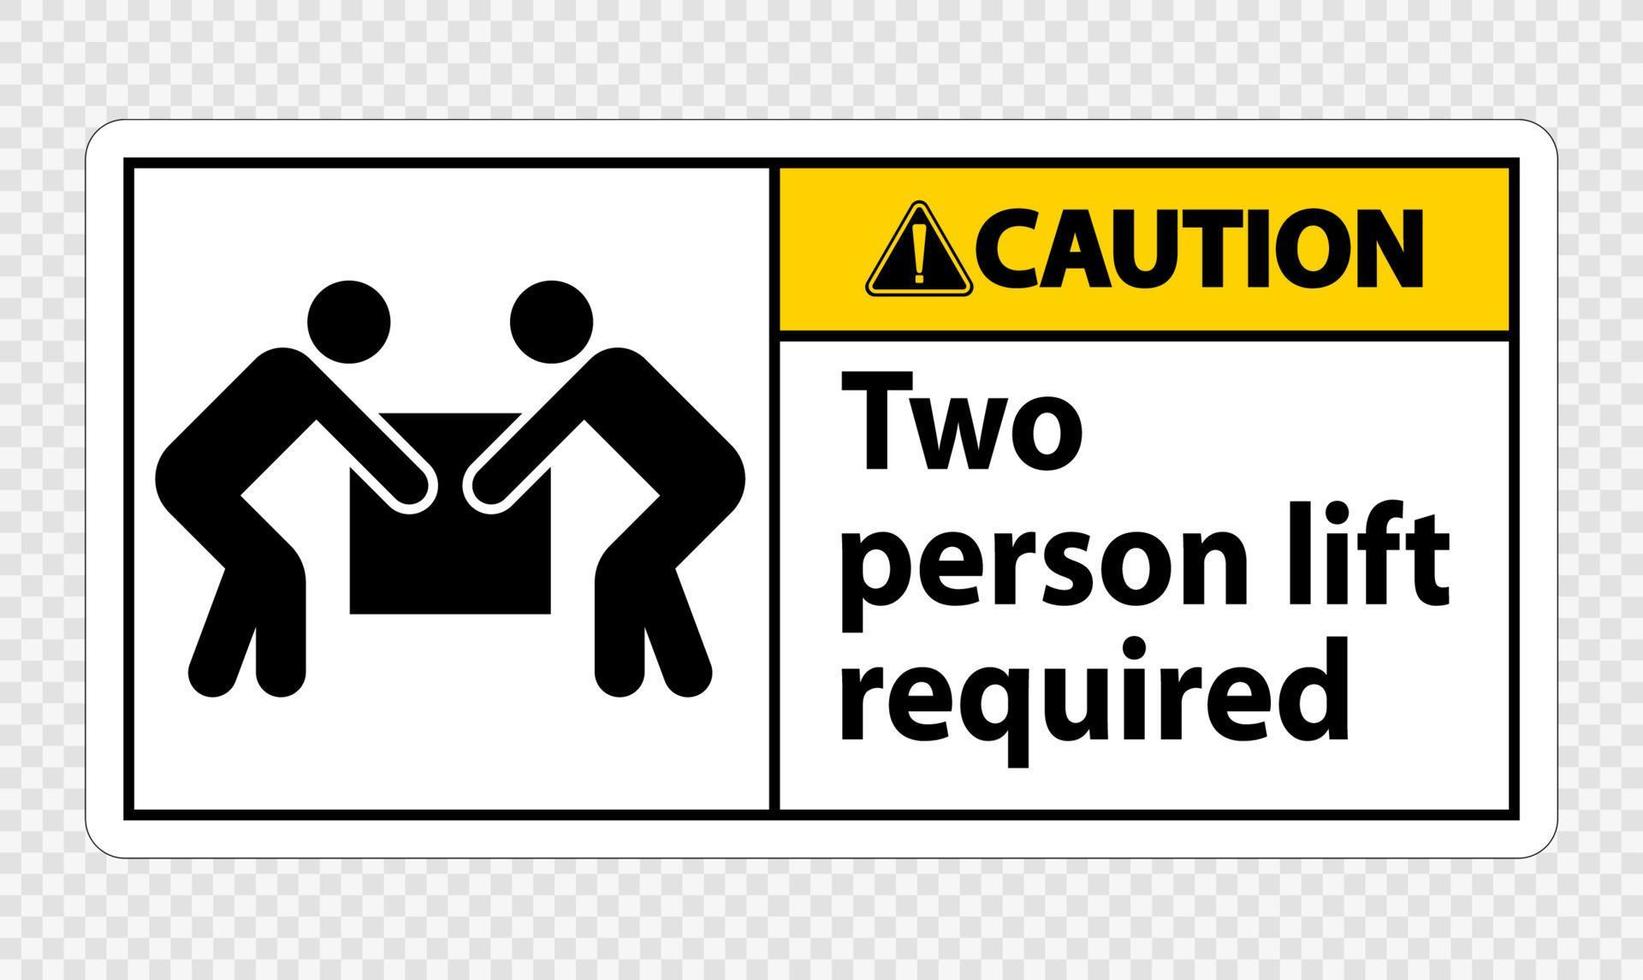 deux personnes ascenseur requis symbole signe isoler sur fond transparent, illustration vectorielle vecteur